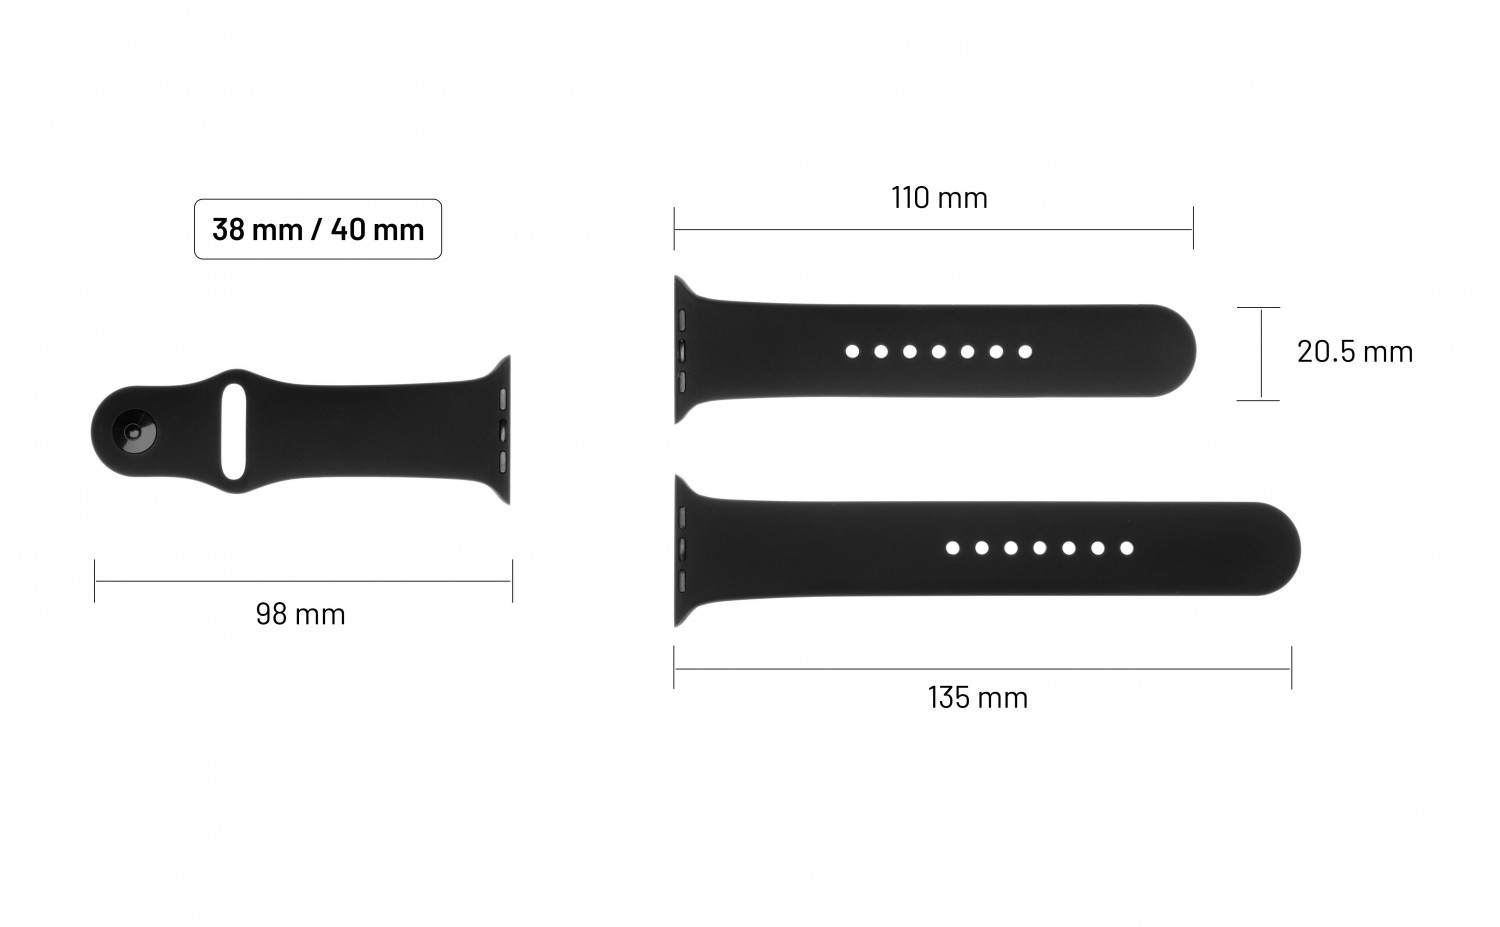 Set silikonových řemínků FIXED Silicone Strap pro Apple Watch 38/40/41 mm, tmavě fialová